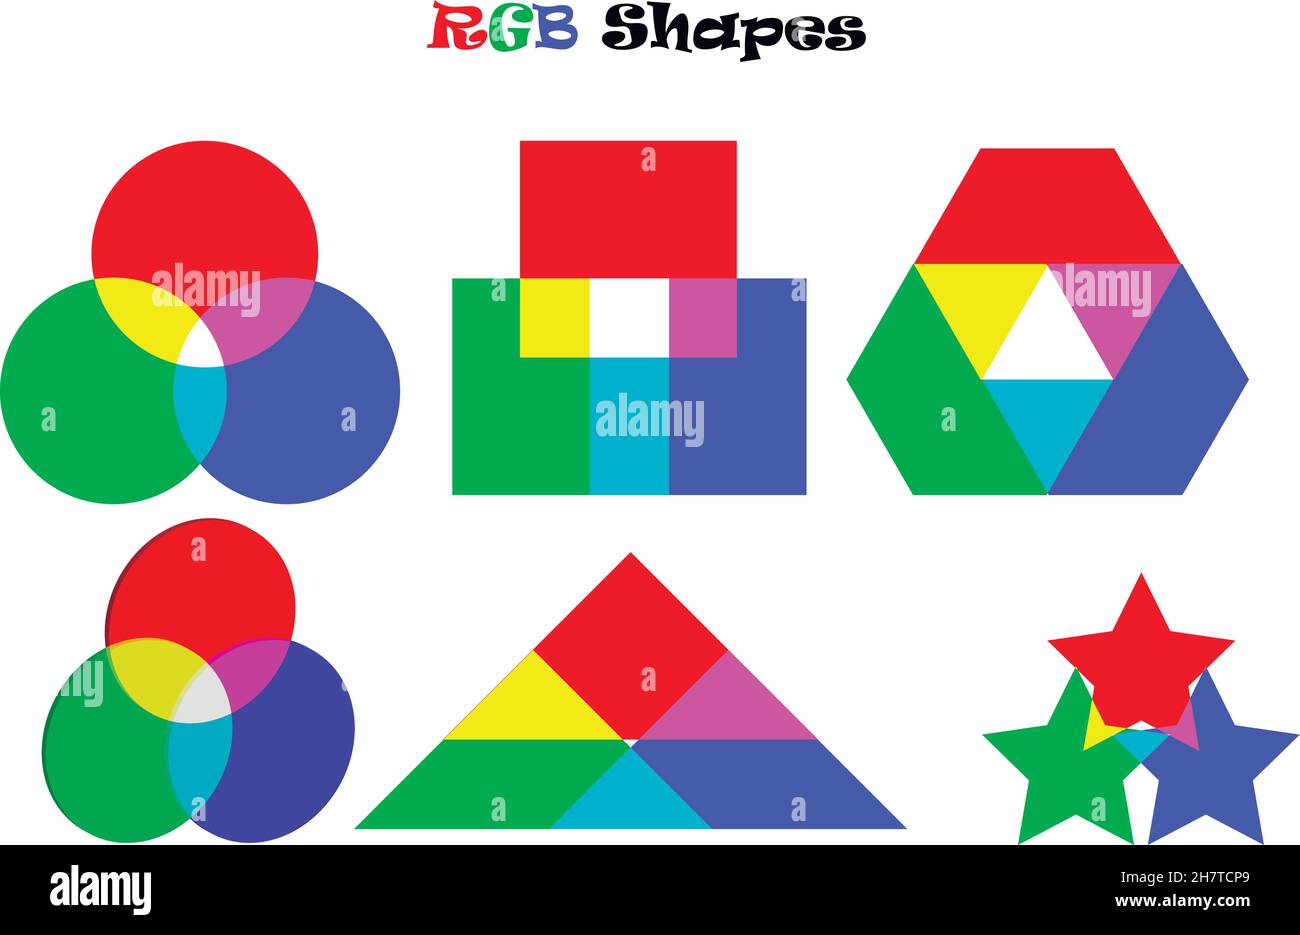 Illustrazione vettoriale di forme RGB diverse che mostra la combinazione dei colori principali. Inoltre può essere usato per un test di colorblindness Illustrazione Vettoriale